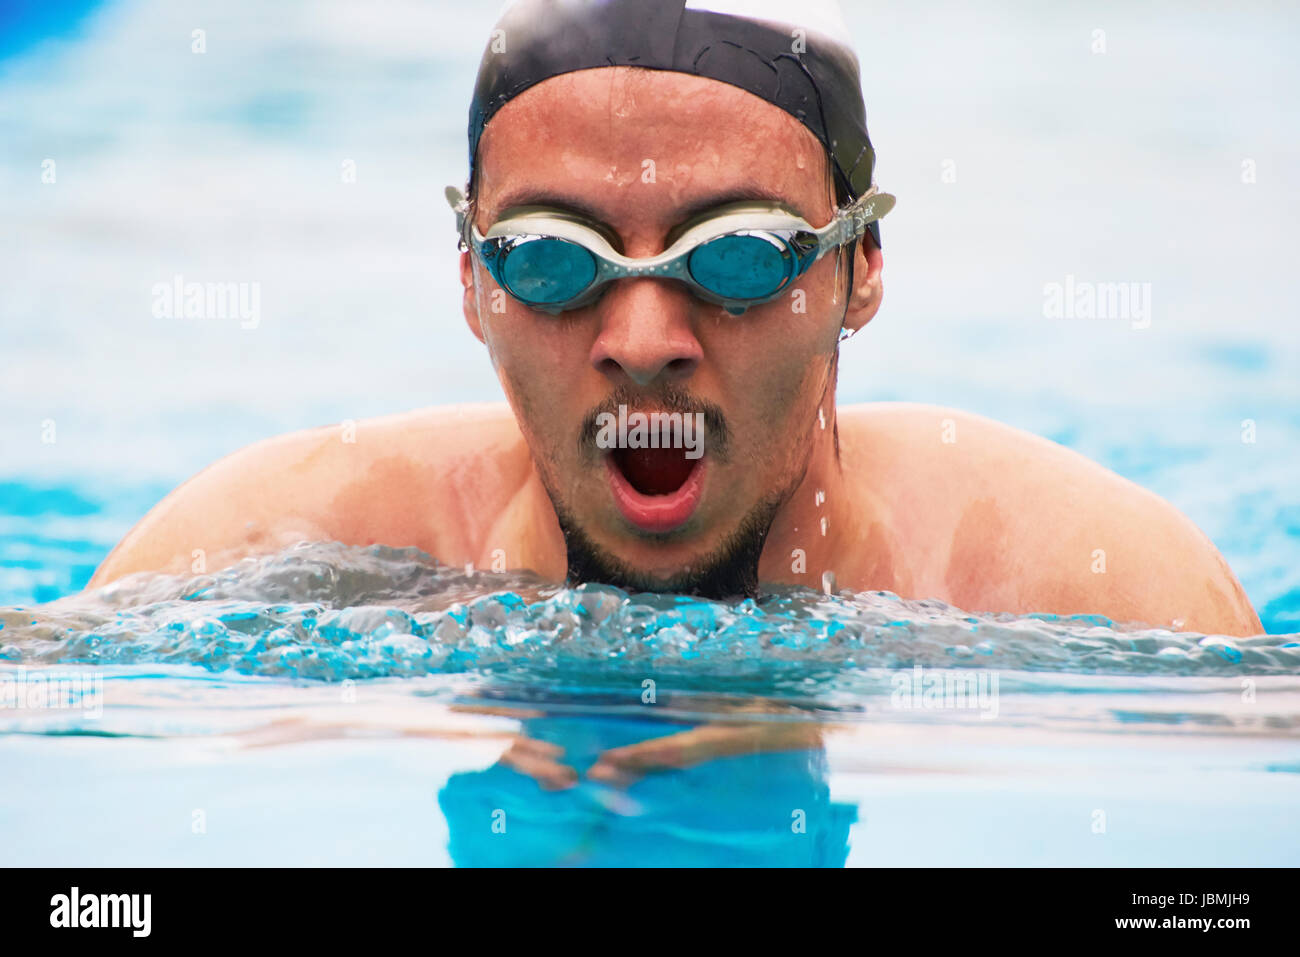 Close-up portrait of man swimming in pool. L'Homme à lunettes de natation Banque D'Images